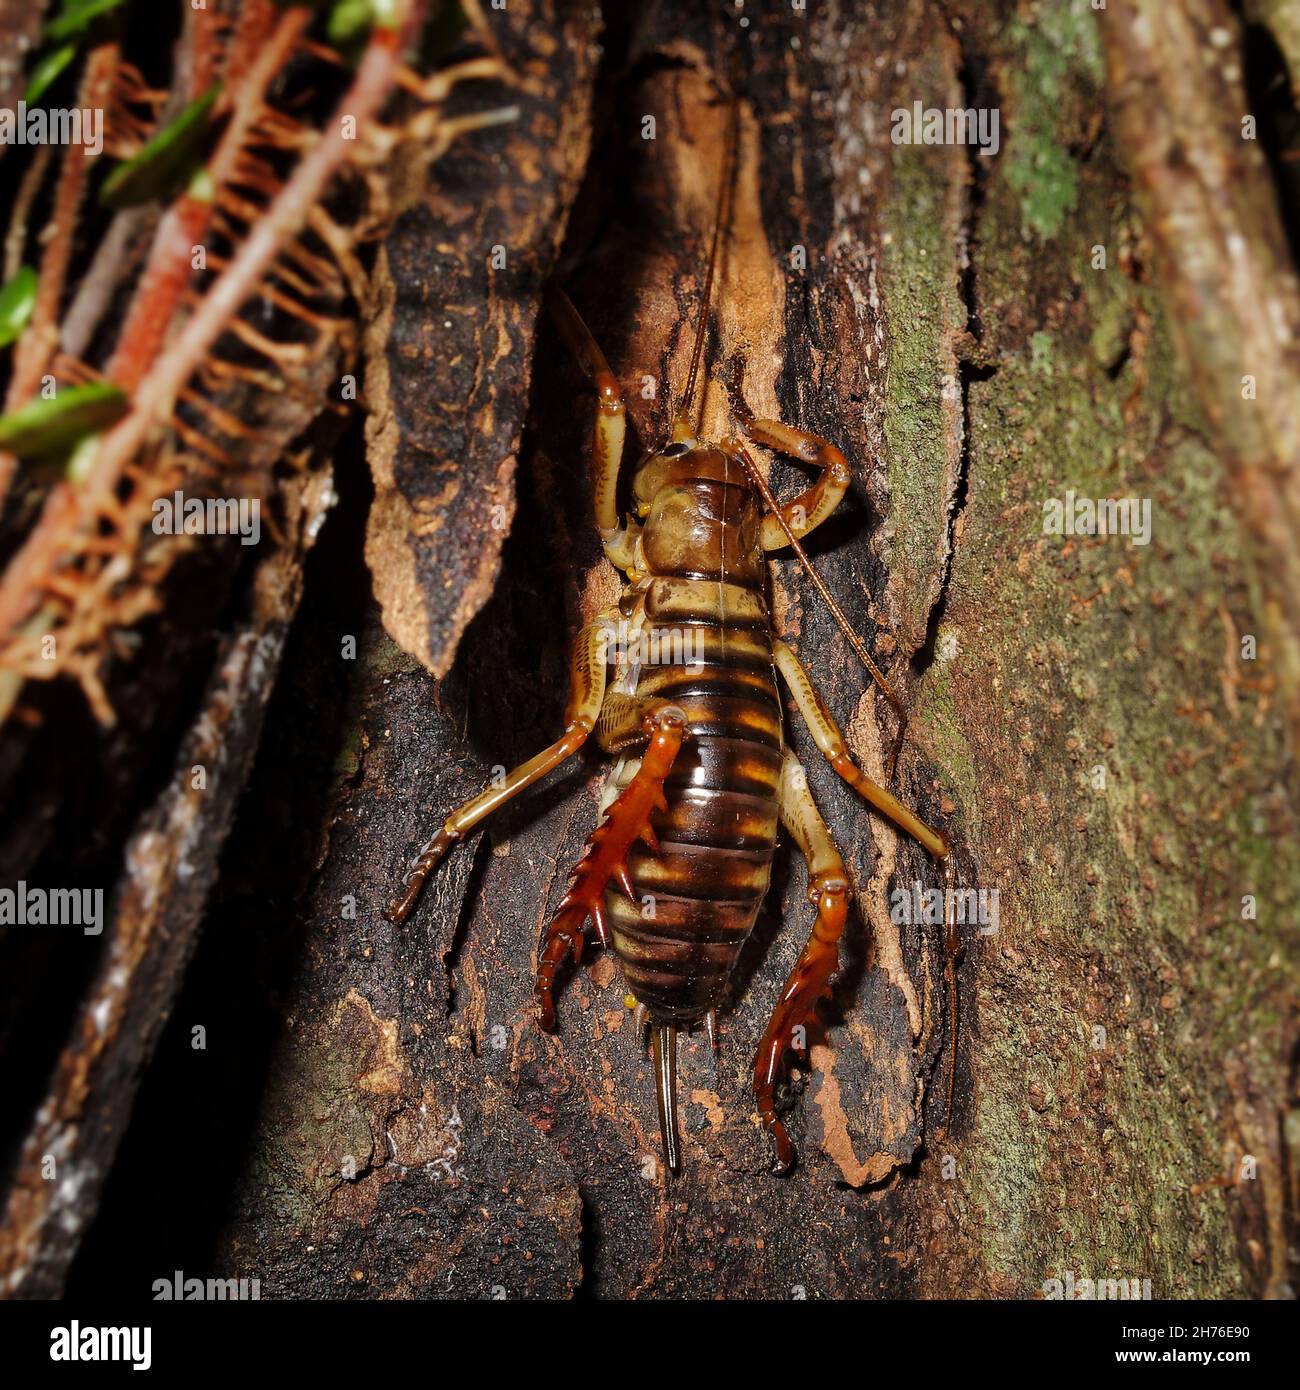 Wellington Tree Weta. Femmina con ovipositor. Insetto endemico della Nuova Zelanda. Foto Stock